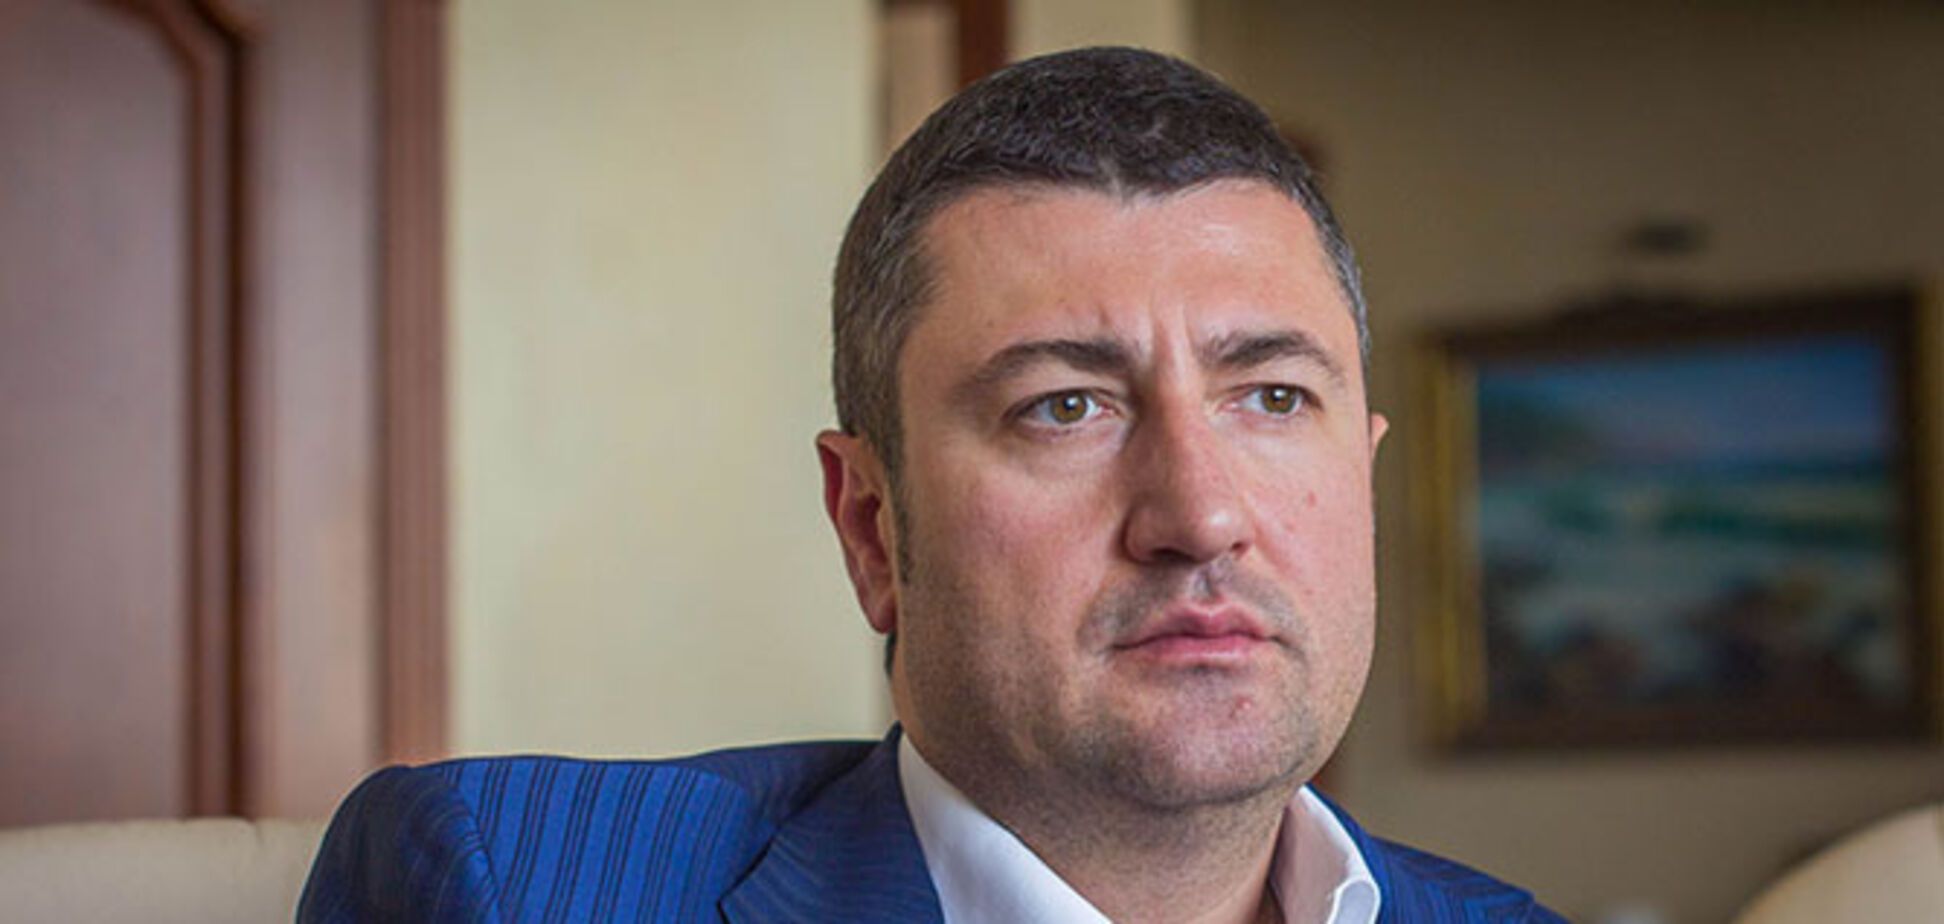 Олег Бахматюк розповів про те, як директор НАБУ назвав відкриту нараду в НБУ, щоб сфальсифікувати справу проти нього